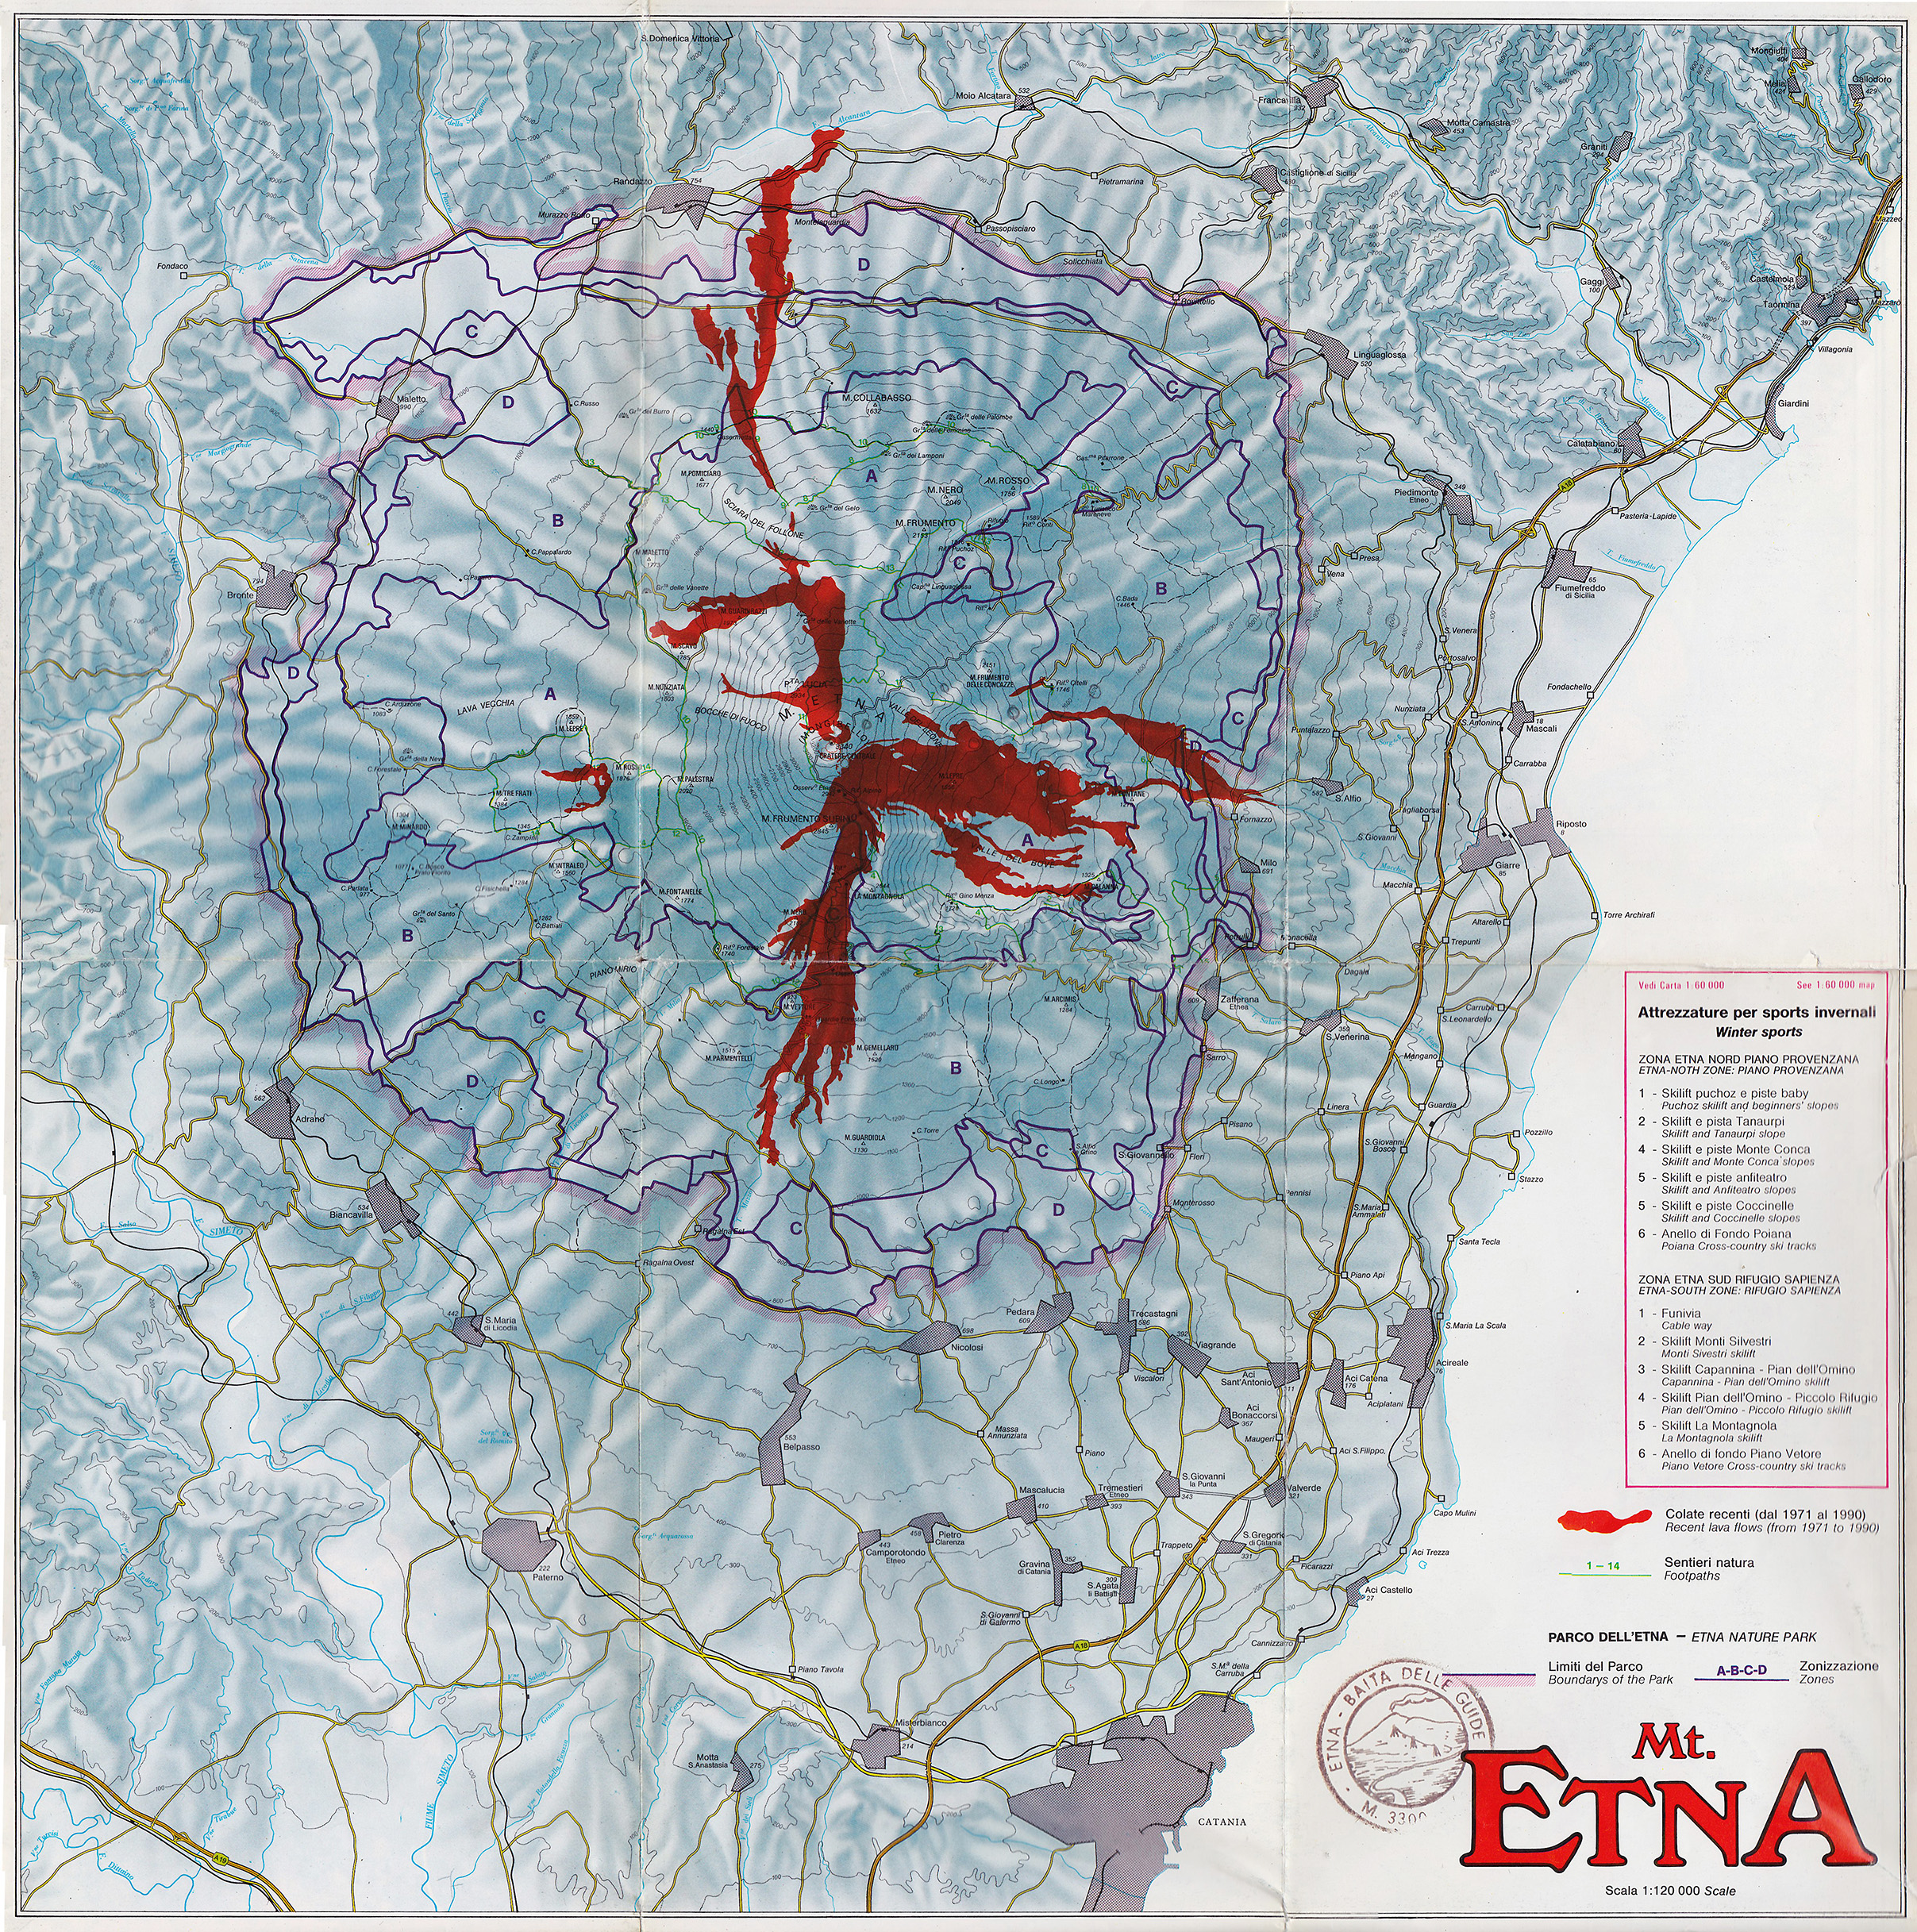 Az Etna naturpark és a recens lávafolyások (1971-1990) térképe. Az északkeleti sarokban látható Taormina